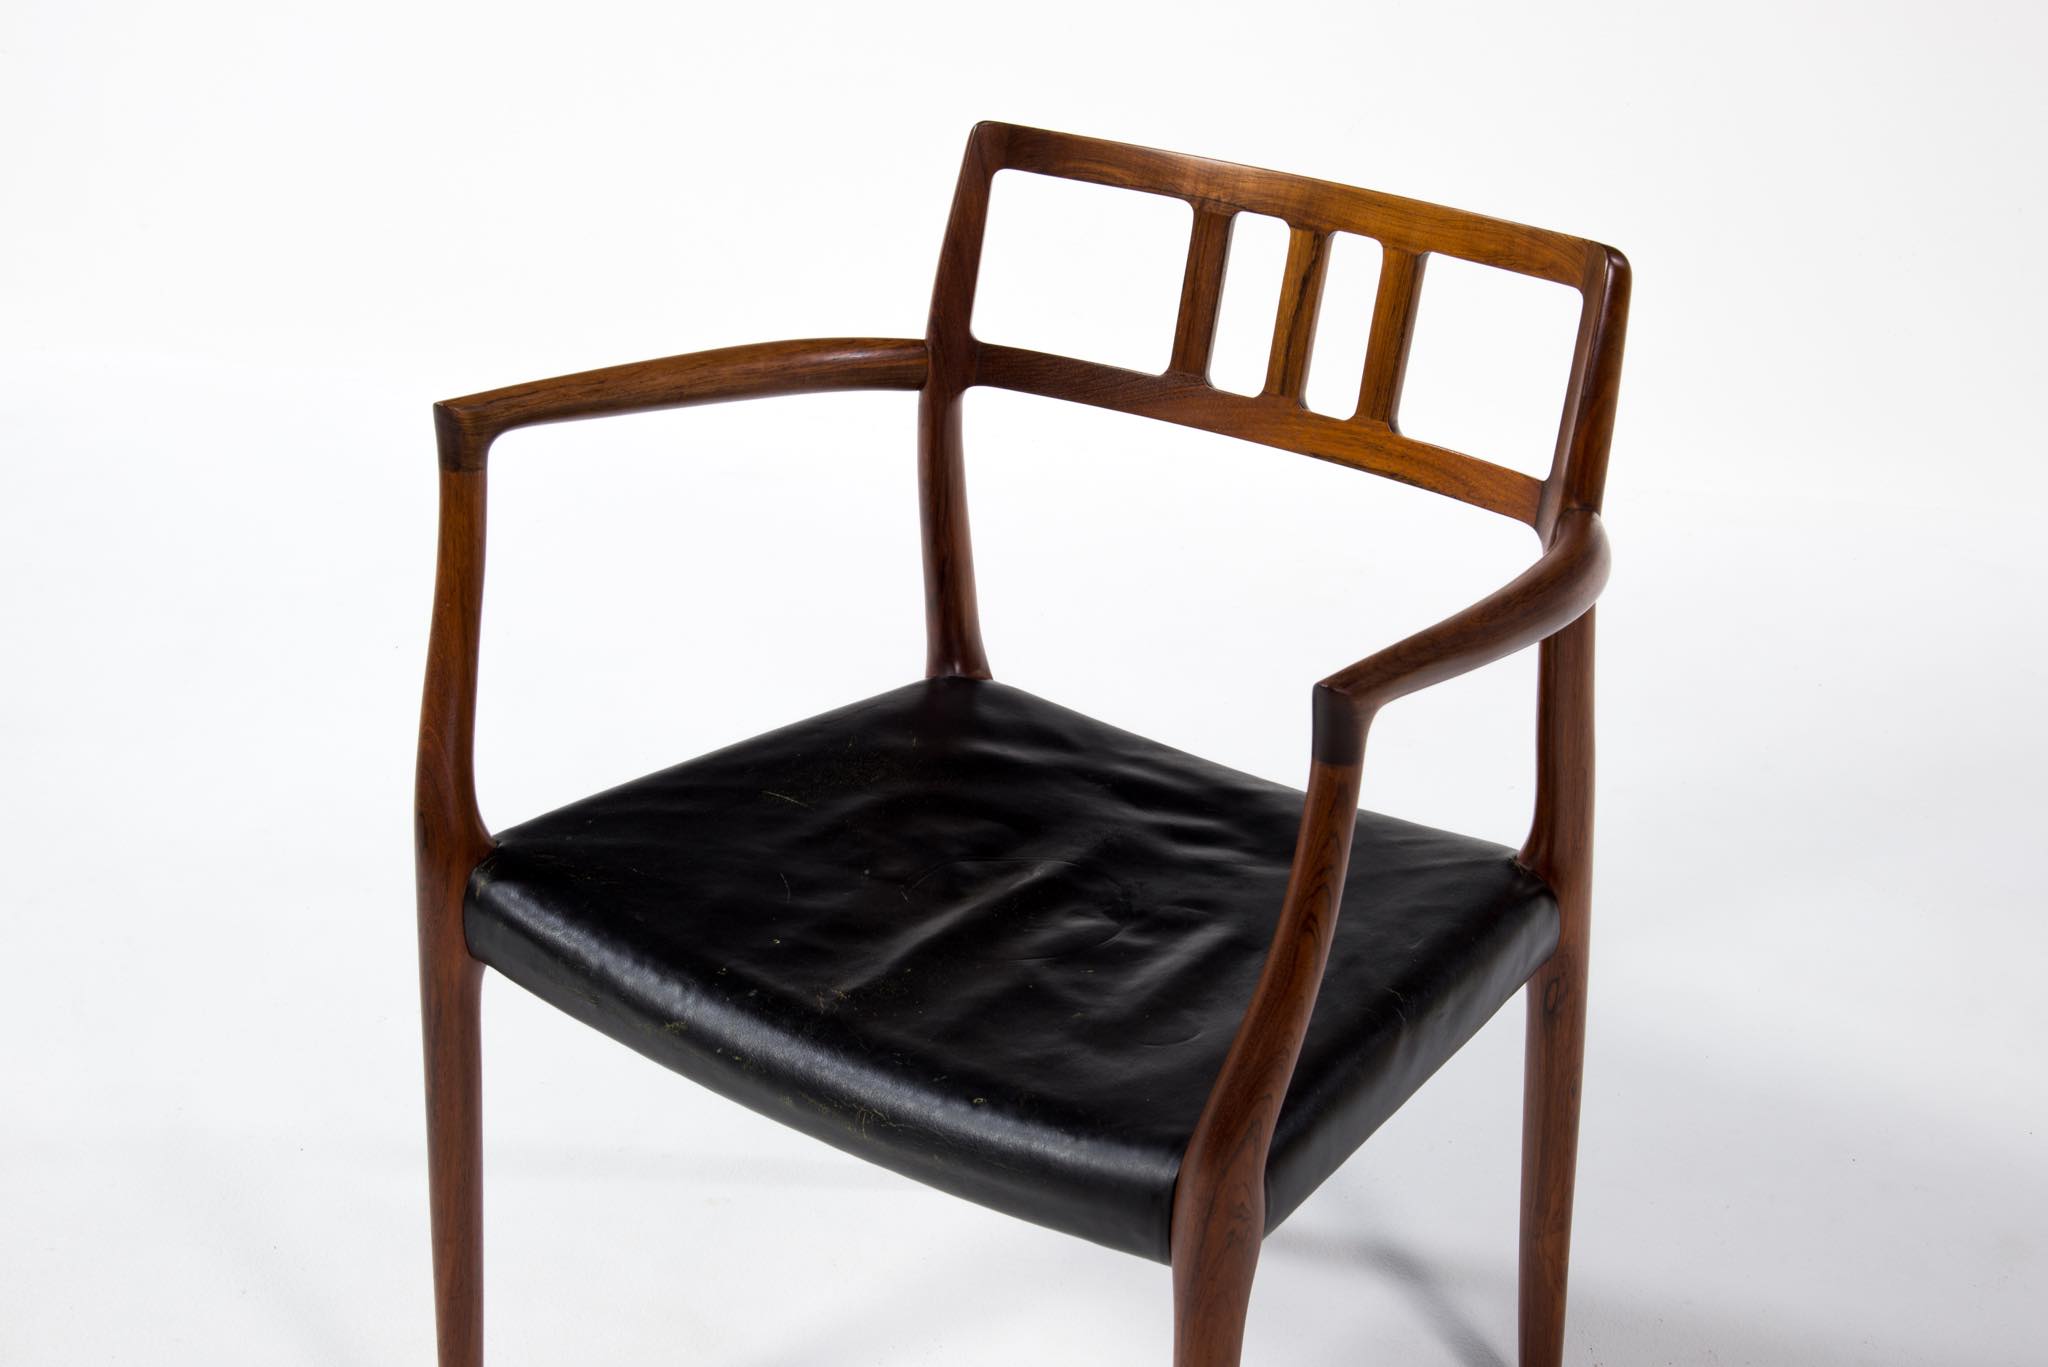 N.O. Møller / J.L. Møller “Model 64” Arm chair｜Luca Scandinavia 